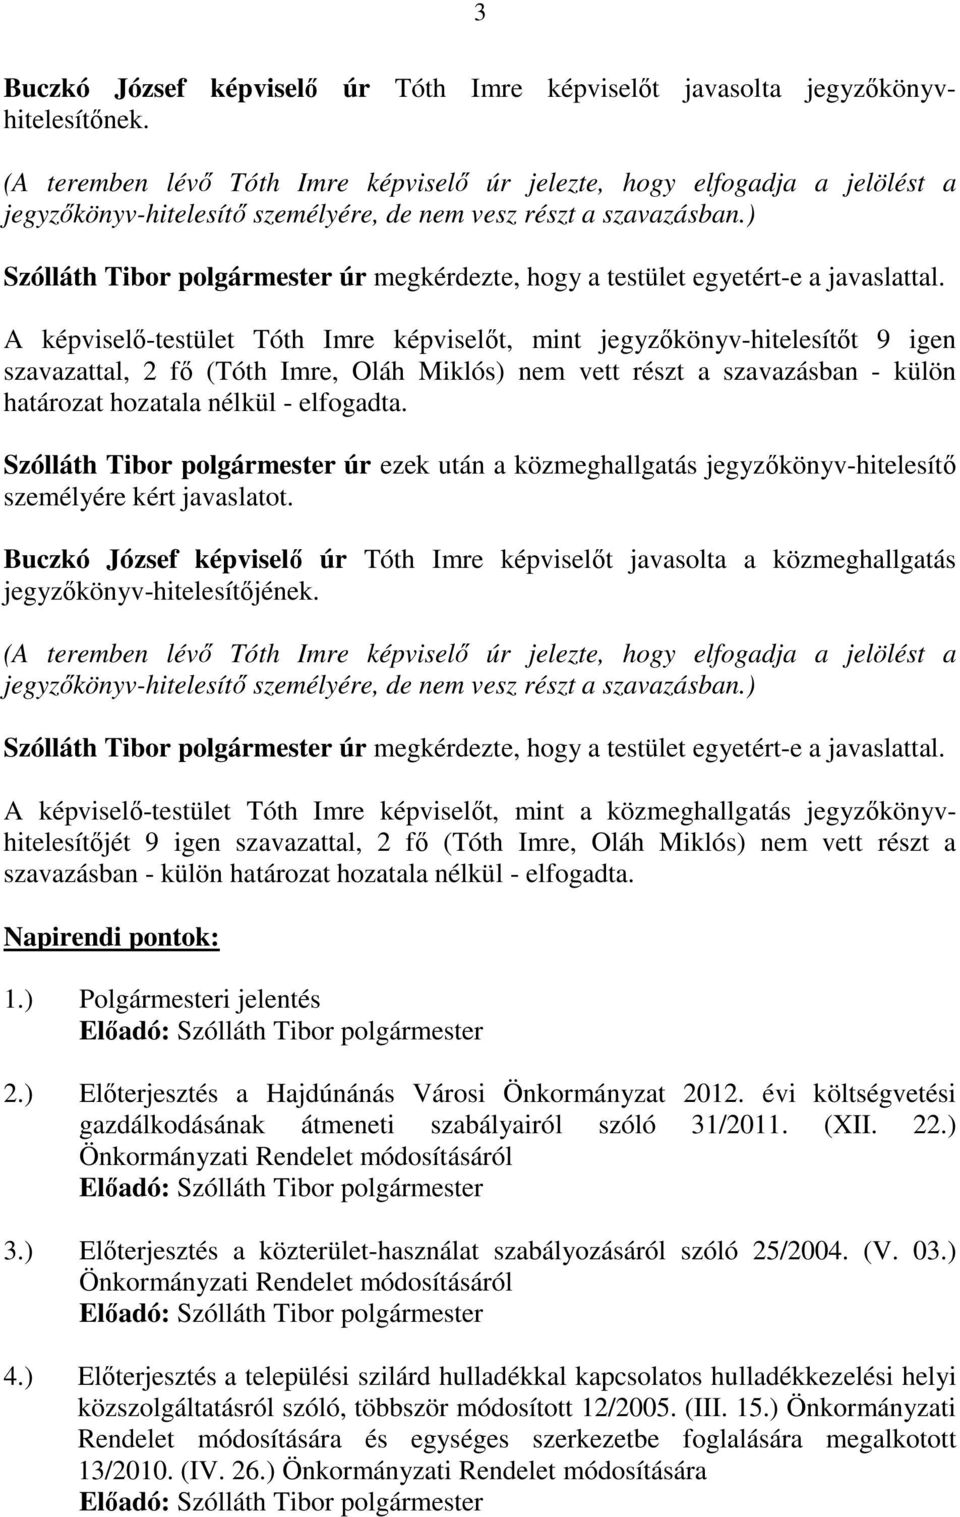 A képviselı-testület képviselıt, mint t 9 igen szavazattal, 2 fı (, Oláh Miklós) nem vett részt a szavazásban - külön határozat hozatala nélkül - elfogadta.